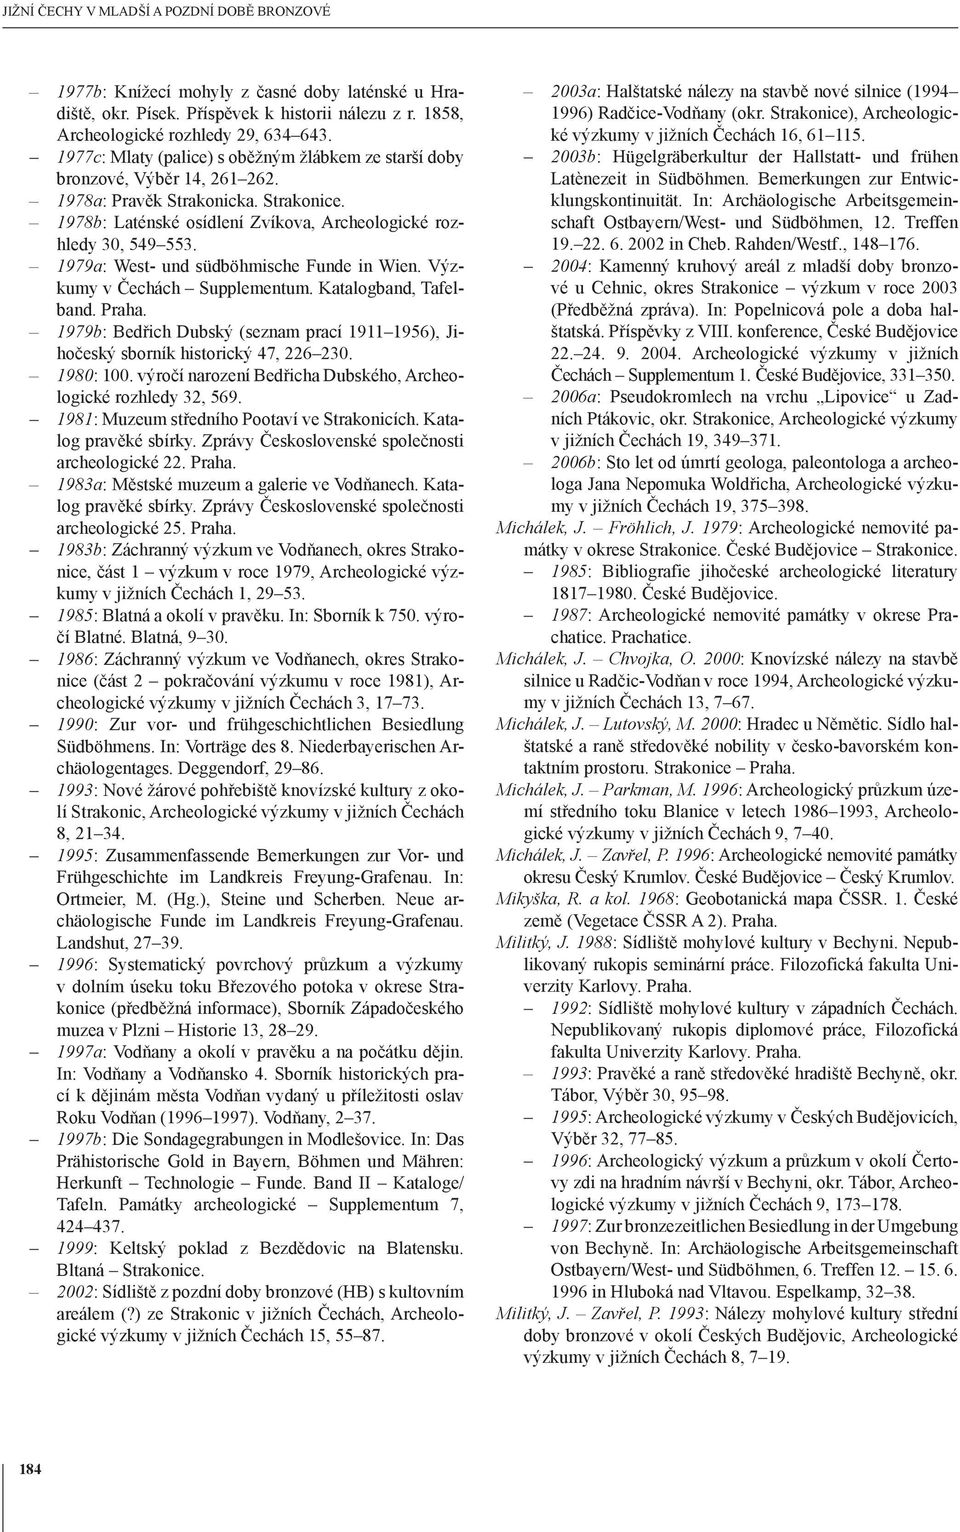 1979a: West- und südböhmische Funde in Wien. Výzkumy v Čechách Supplementum. Katalogband, Tafelband. 1979b: Bedřich Dubský (seznam prací 1911 1956), Jihočeský sborník historický 47, 226 230.